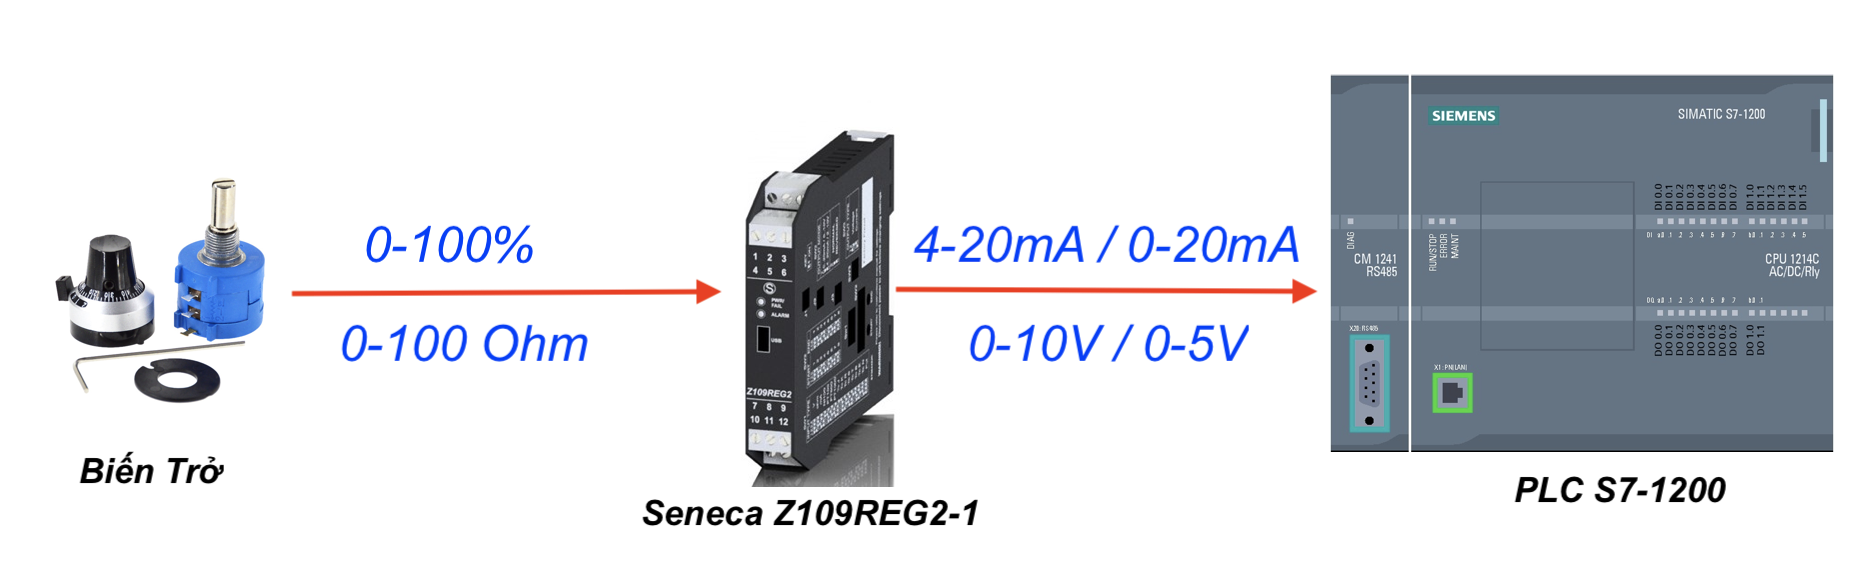 bộ chuyển đổi điện trở Z109REG2-1 sang Analog 4-20mA 0-10V